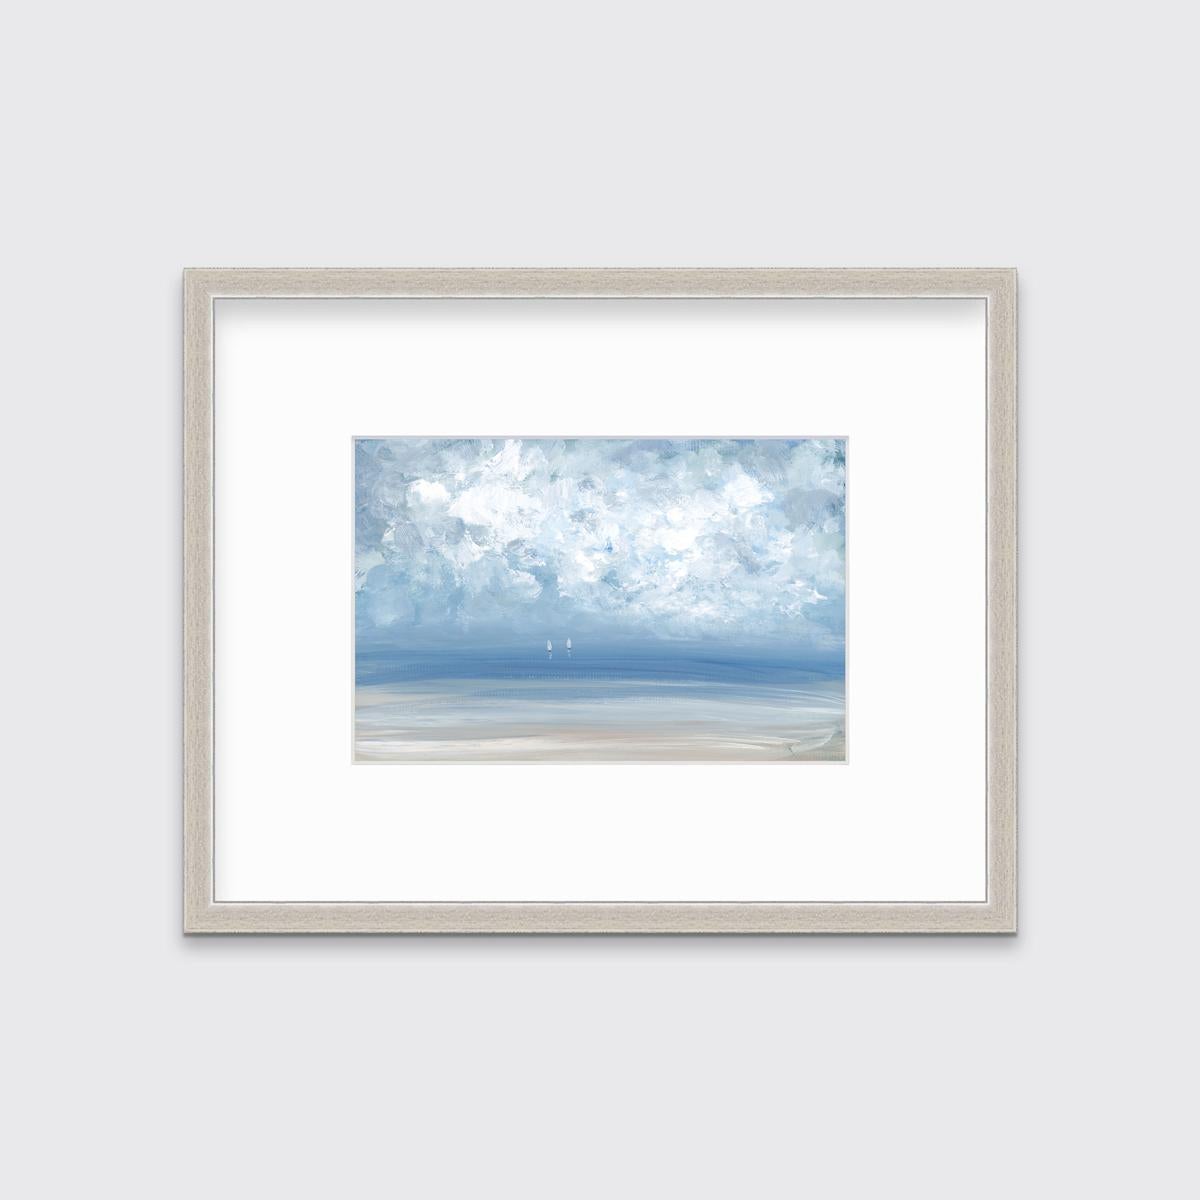 S. Cora Aldo Landscape Print – „High Clouds“, gerahmter Giclee-Druck in limitierter Auflage, 16" x 24"